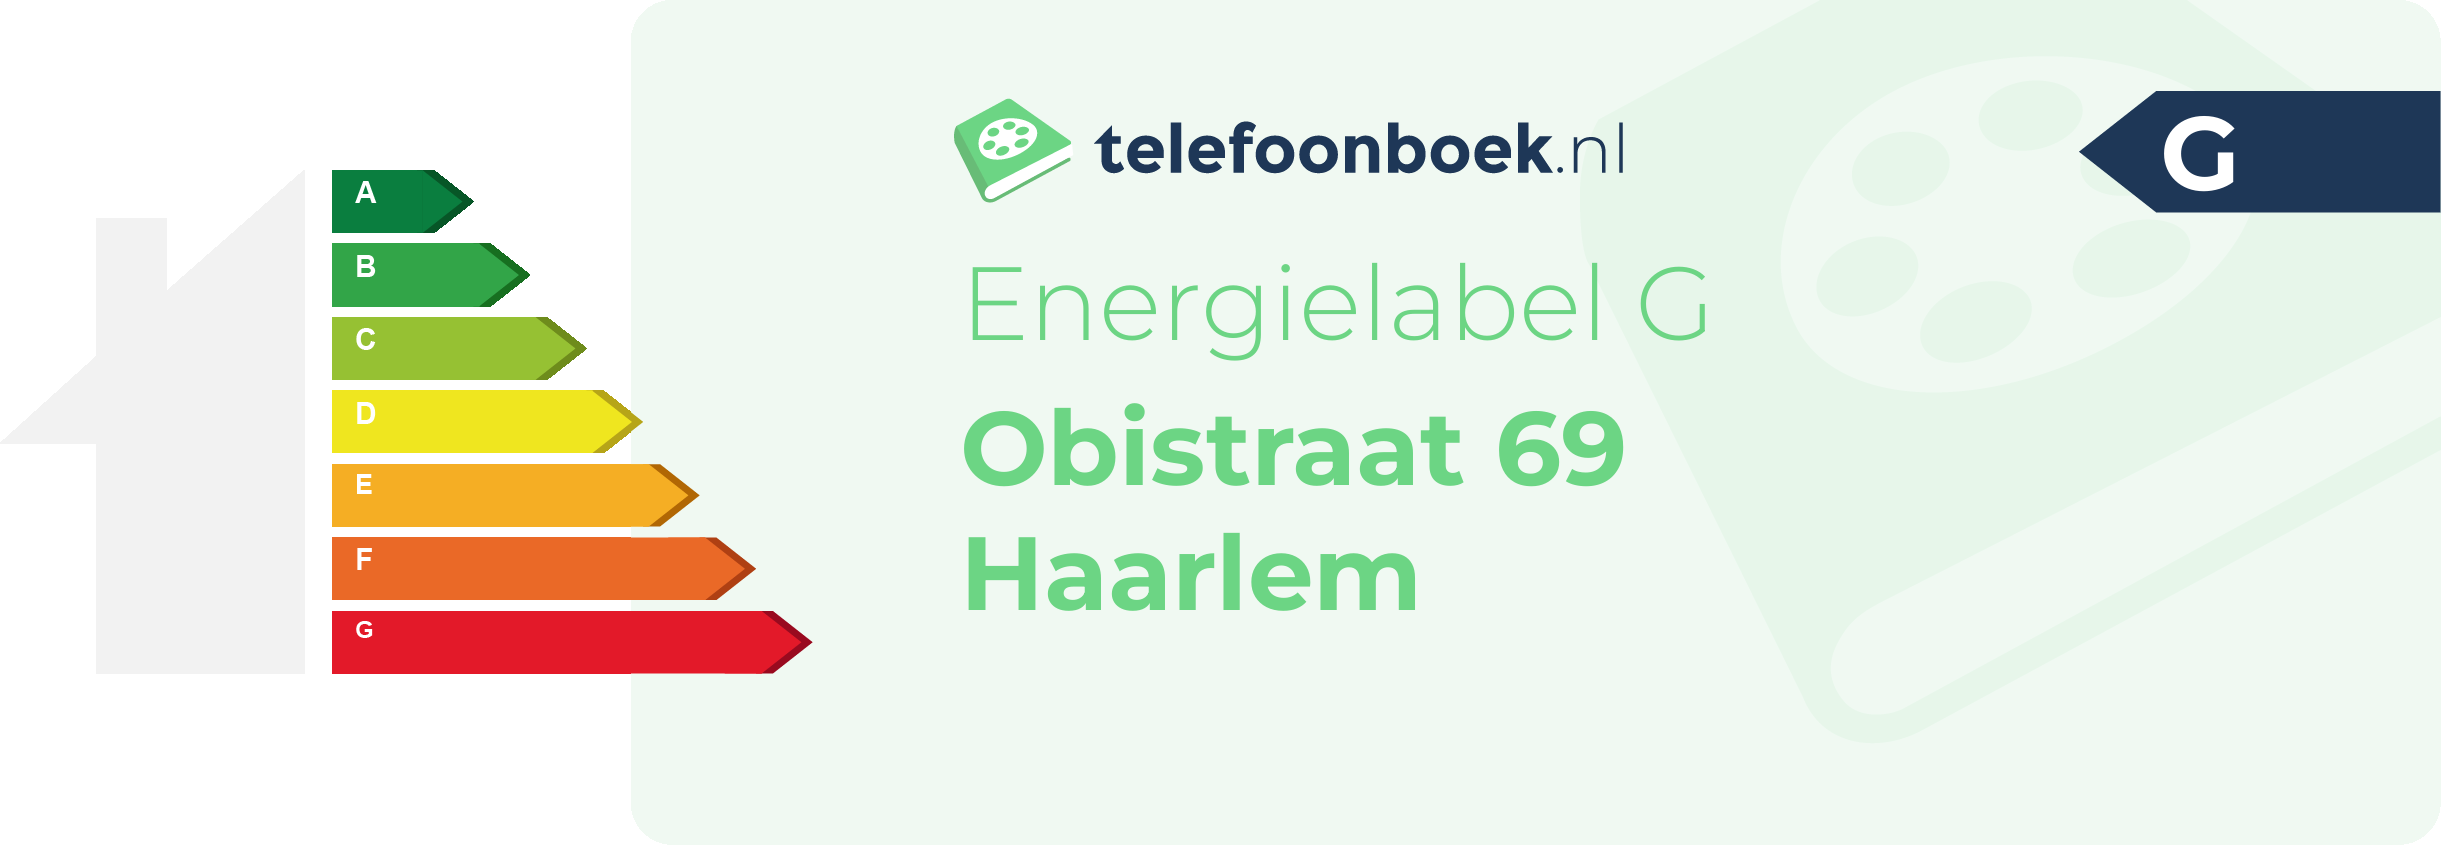 Energielabel Obistraat 69 Haarlem